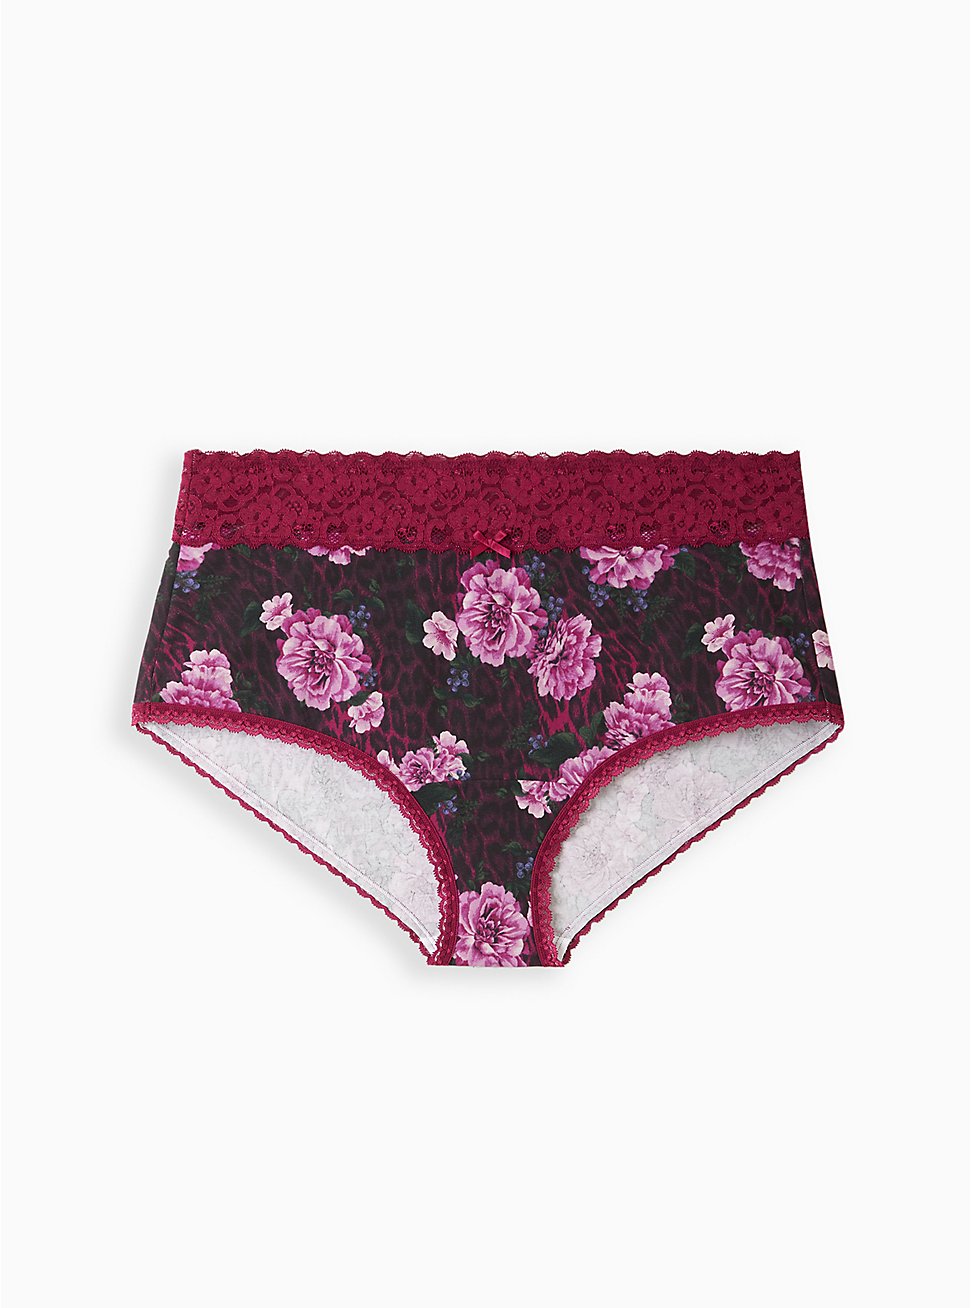 Plus Size Brief Panty - Cotton Floral Black, MERRY FLORAL LEOPARD, hi-res